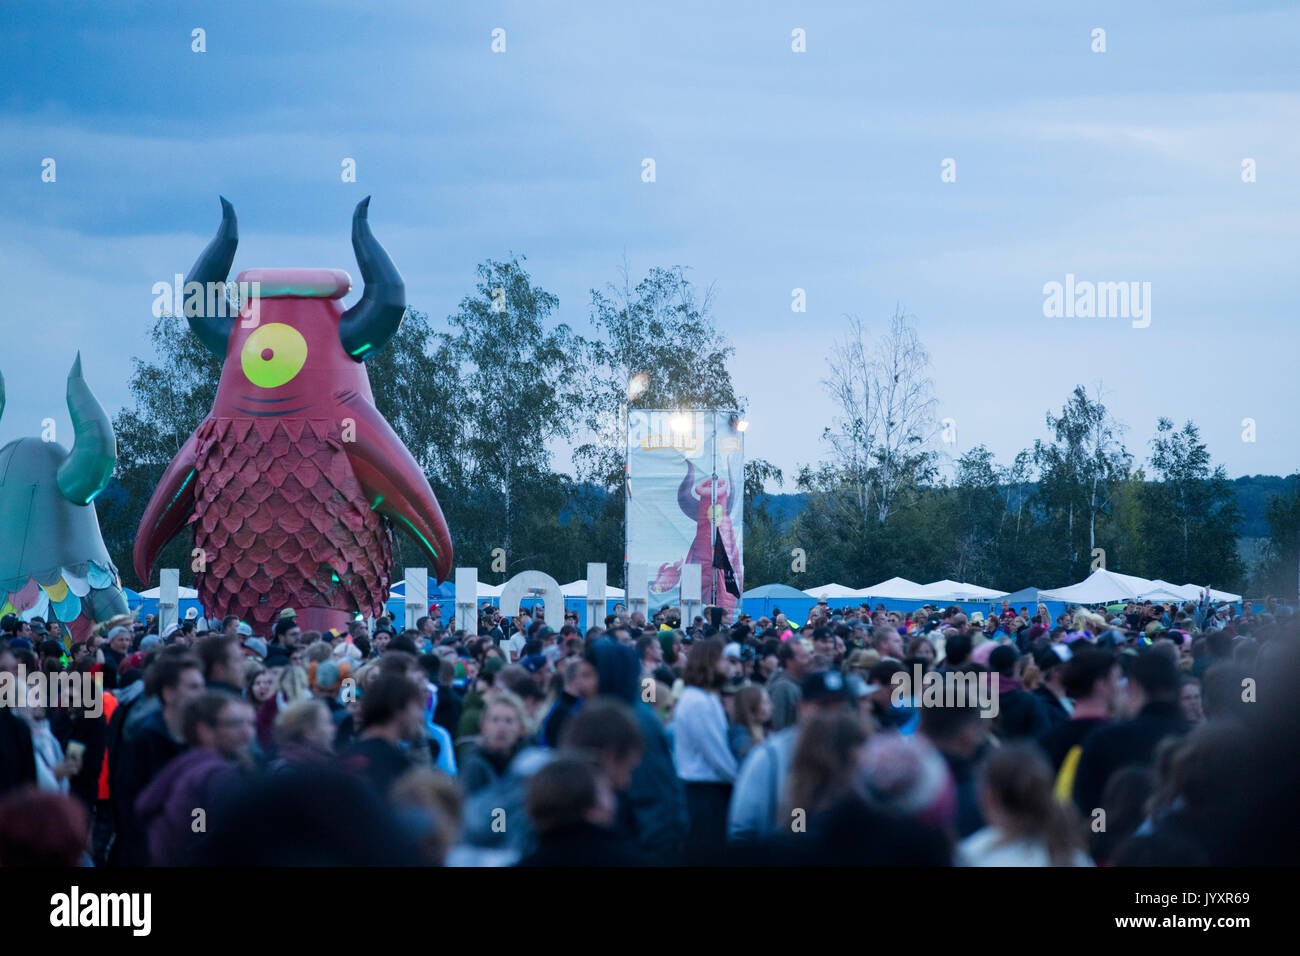 Migliaia di visitatori flusso passato "Highviech' - la mascotte del festival - nella motivazione di Highfield Festival in Grosspoesna, Germania, 20 agosto 2017. Foto: Alexander Prautzsch/dpa Foto Stock